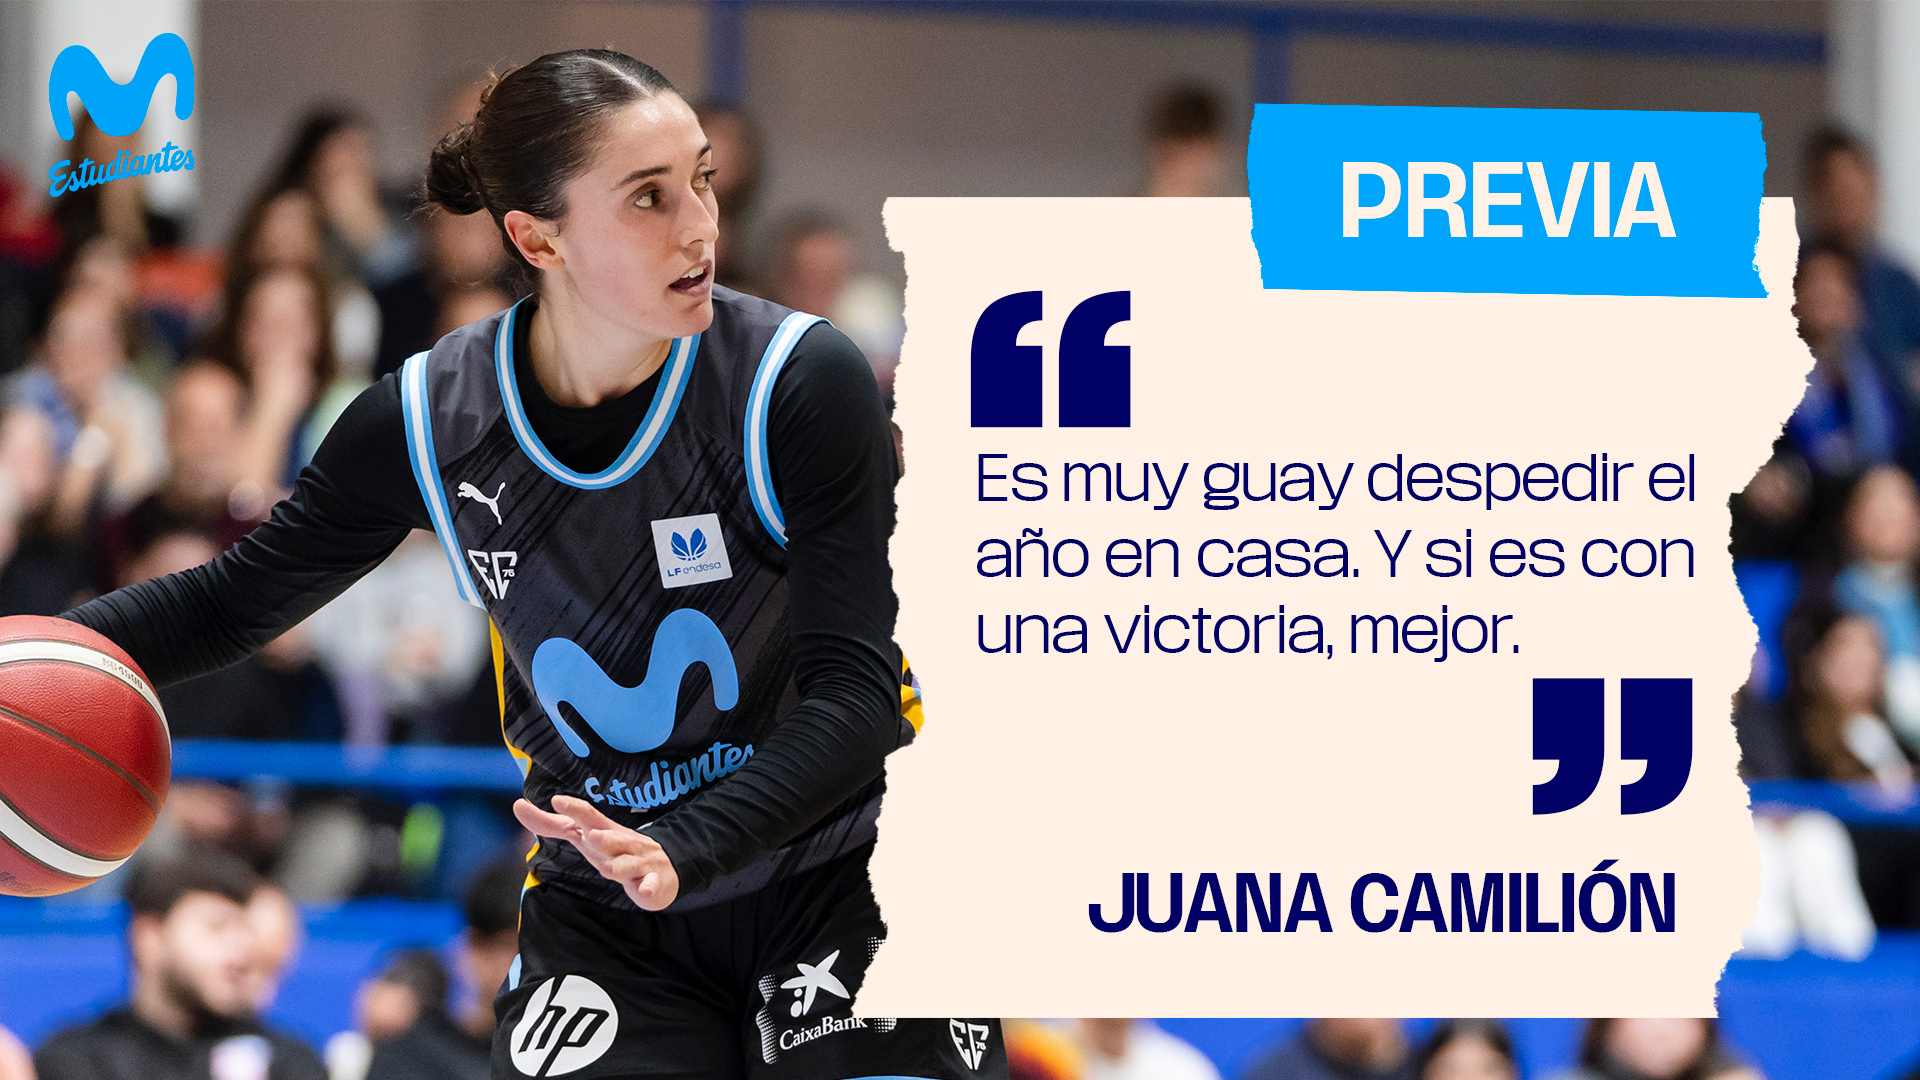 Juana Camilión: «Es muy guay acabar el año en casa, y si es con una victoria, mejor.»